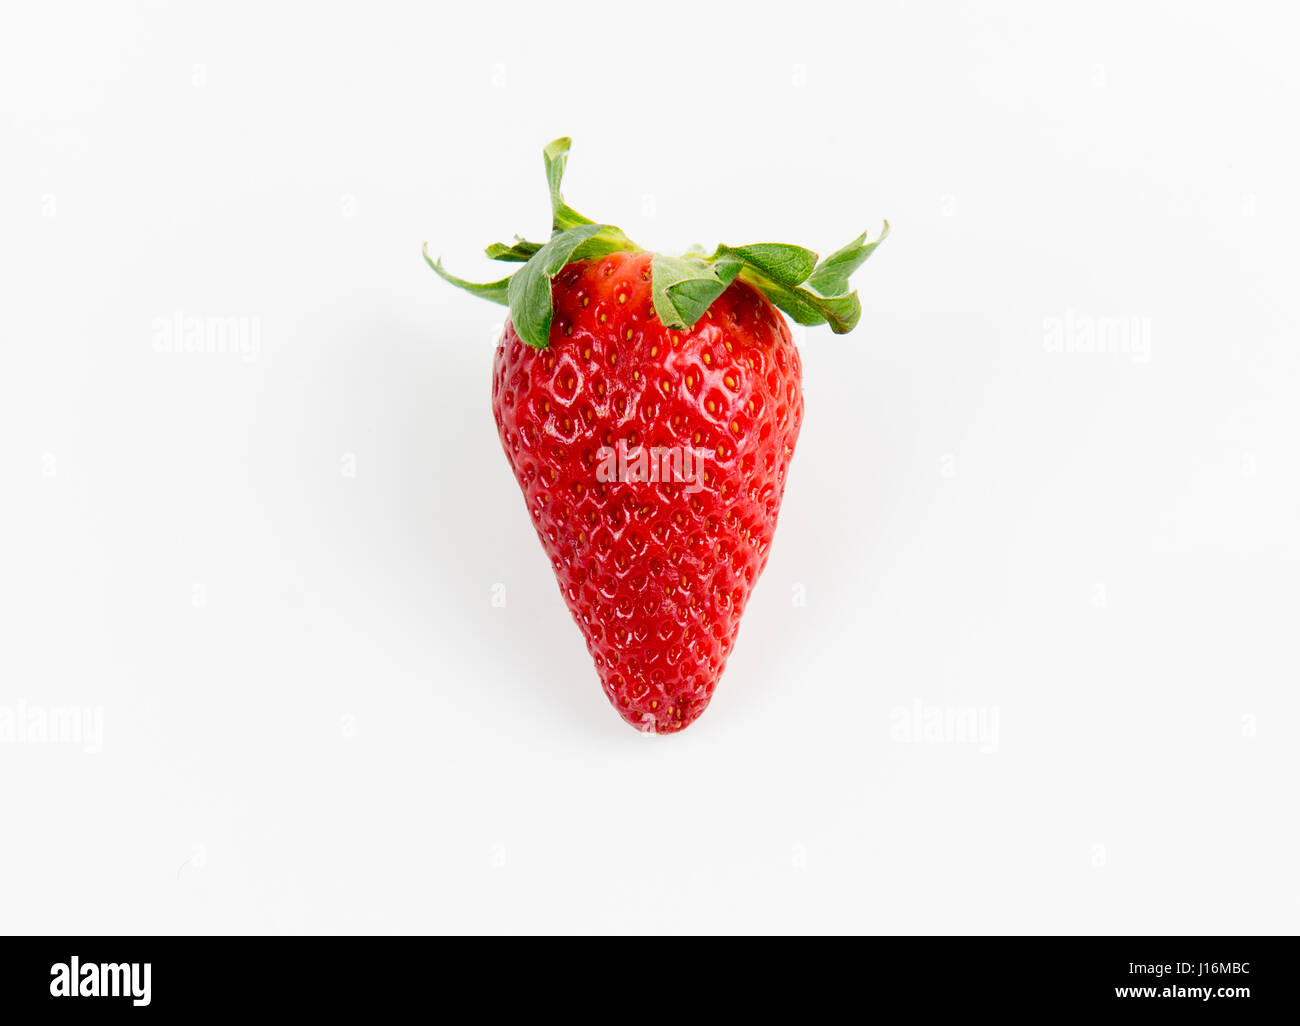 Frische leckere rote Erdbeeren isoliert auf weiss. Erdbeeren sind mit grünen Stängel und Blätter Stockfoto